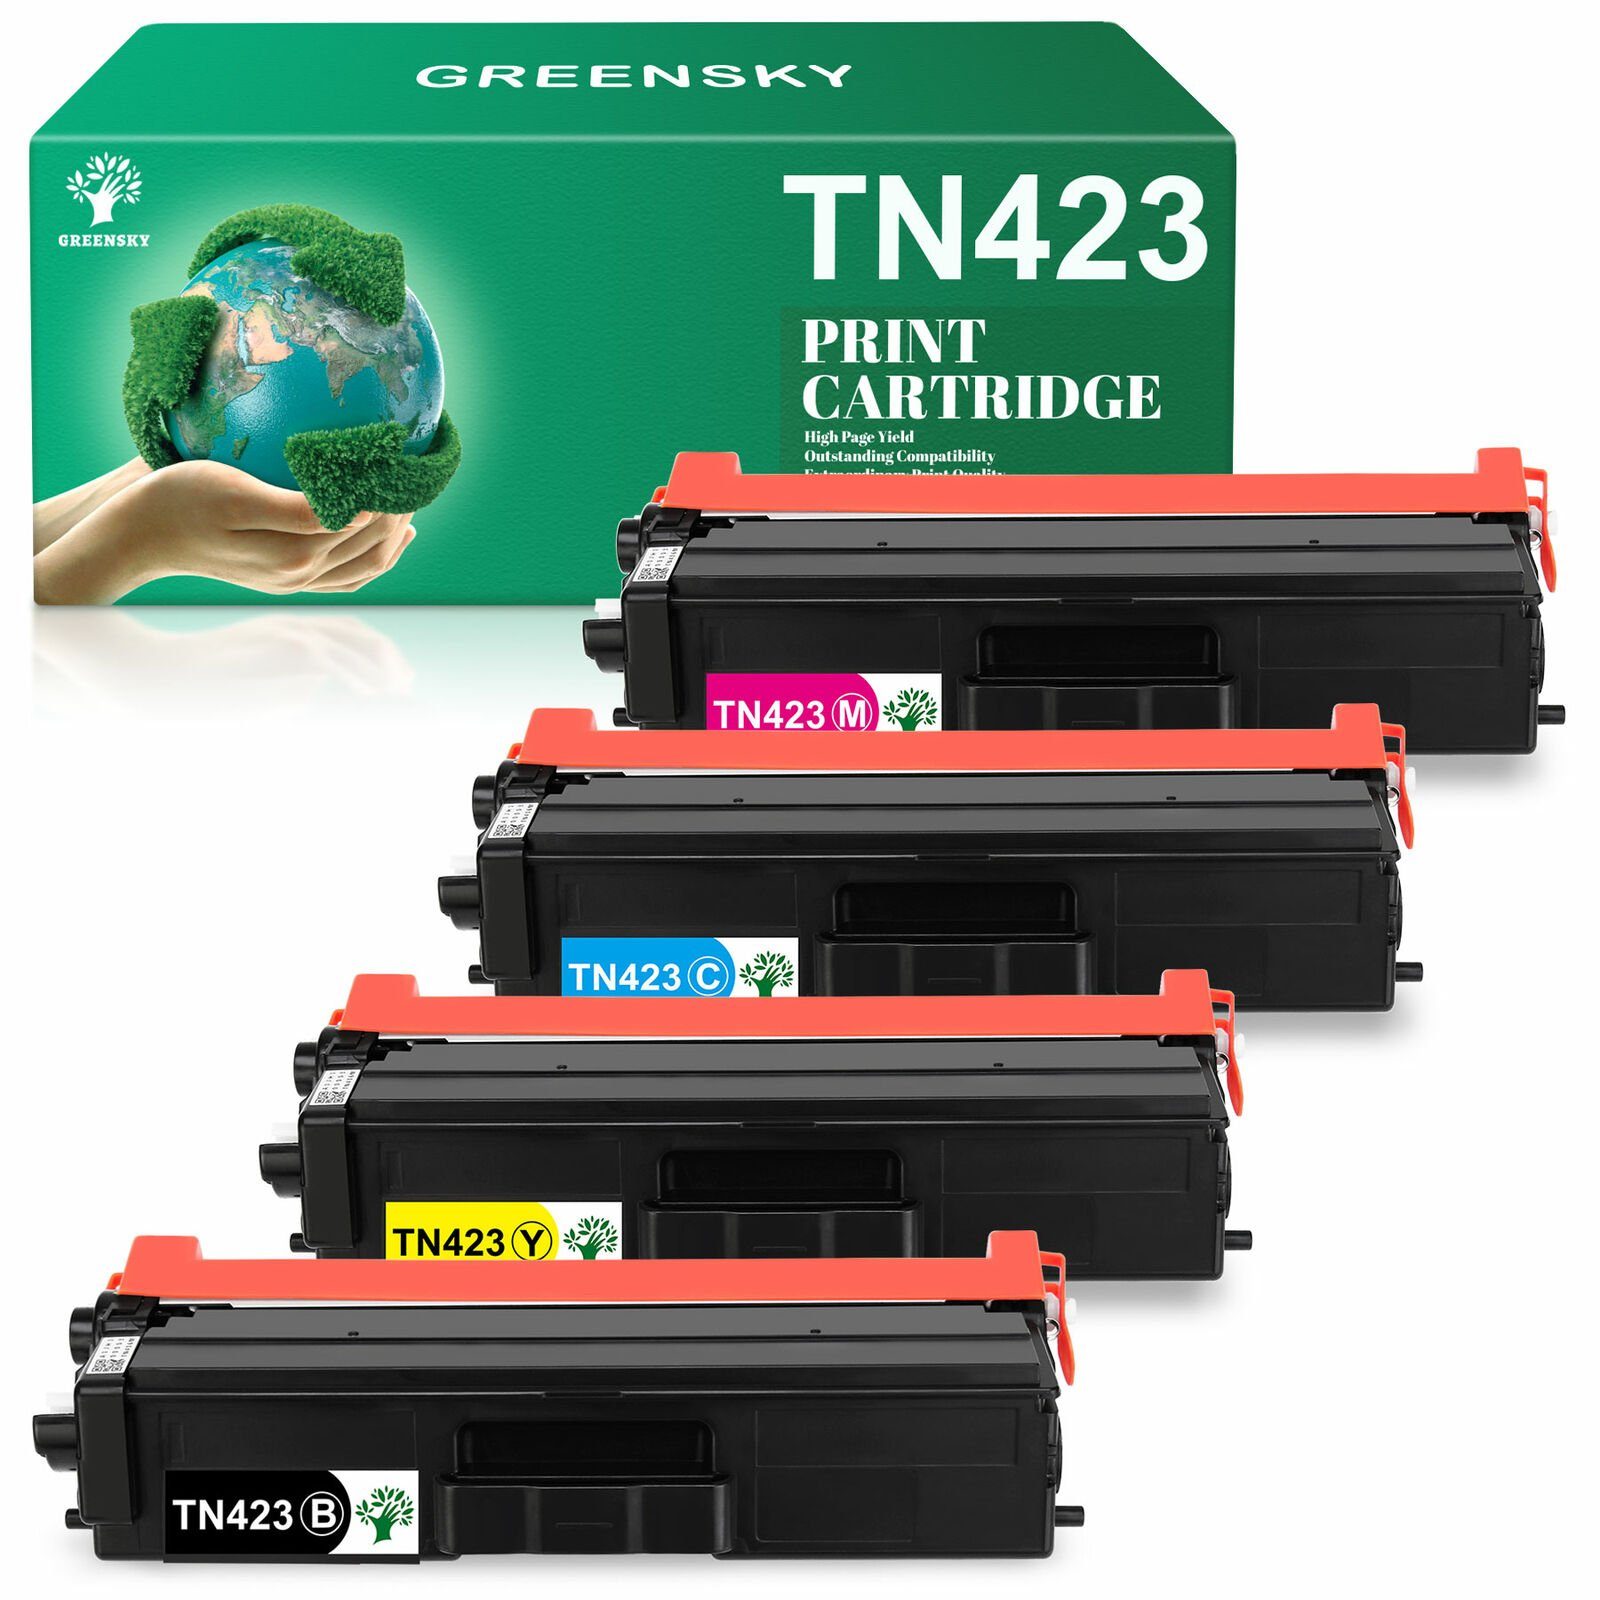 Greensky Tonerpatrone Kompatibel für TN423 TN 423 mfc-l8690cdw l8260cdw dcp-l8410cdw 1x Schwarz, 1x Cyan, 1x Magenta, 1x Gelb